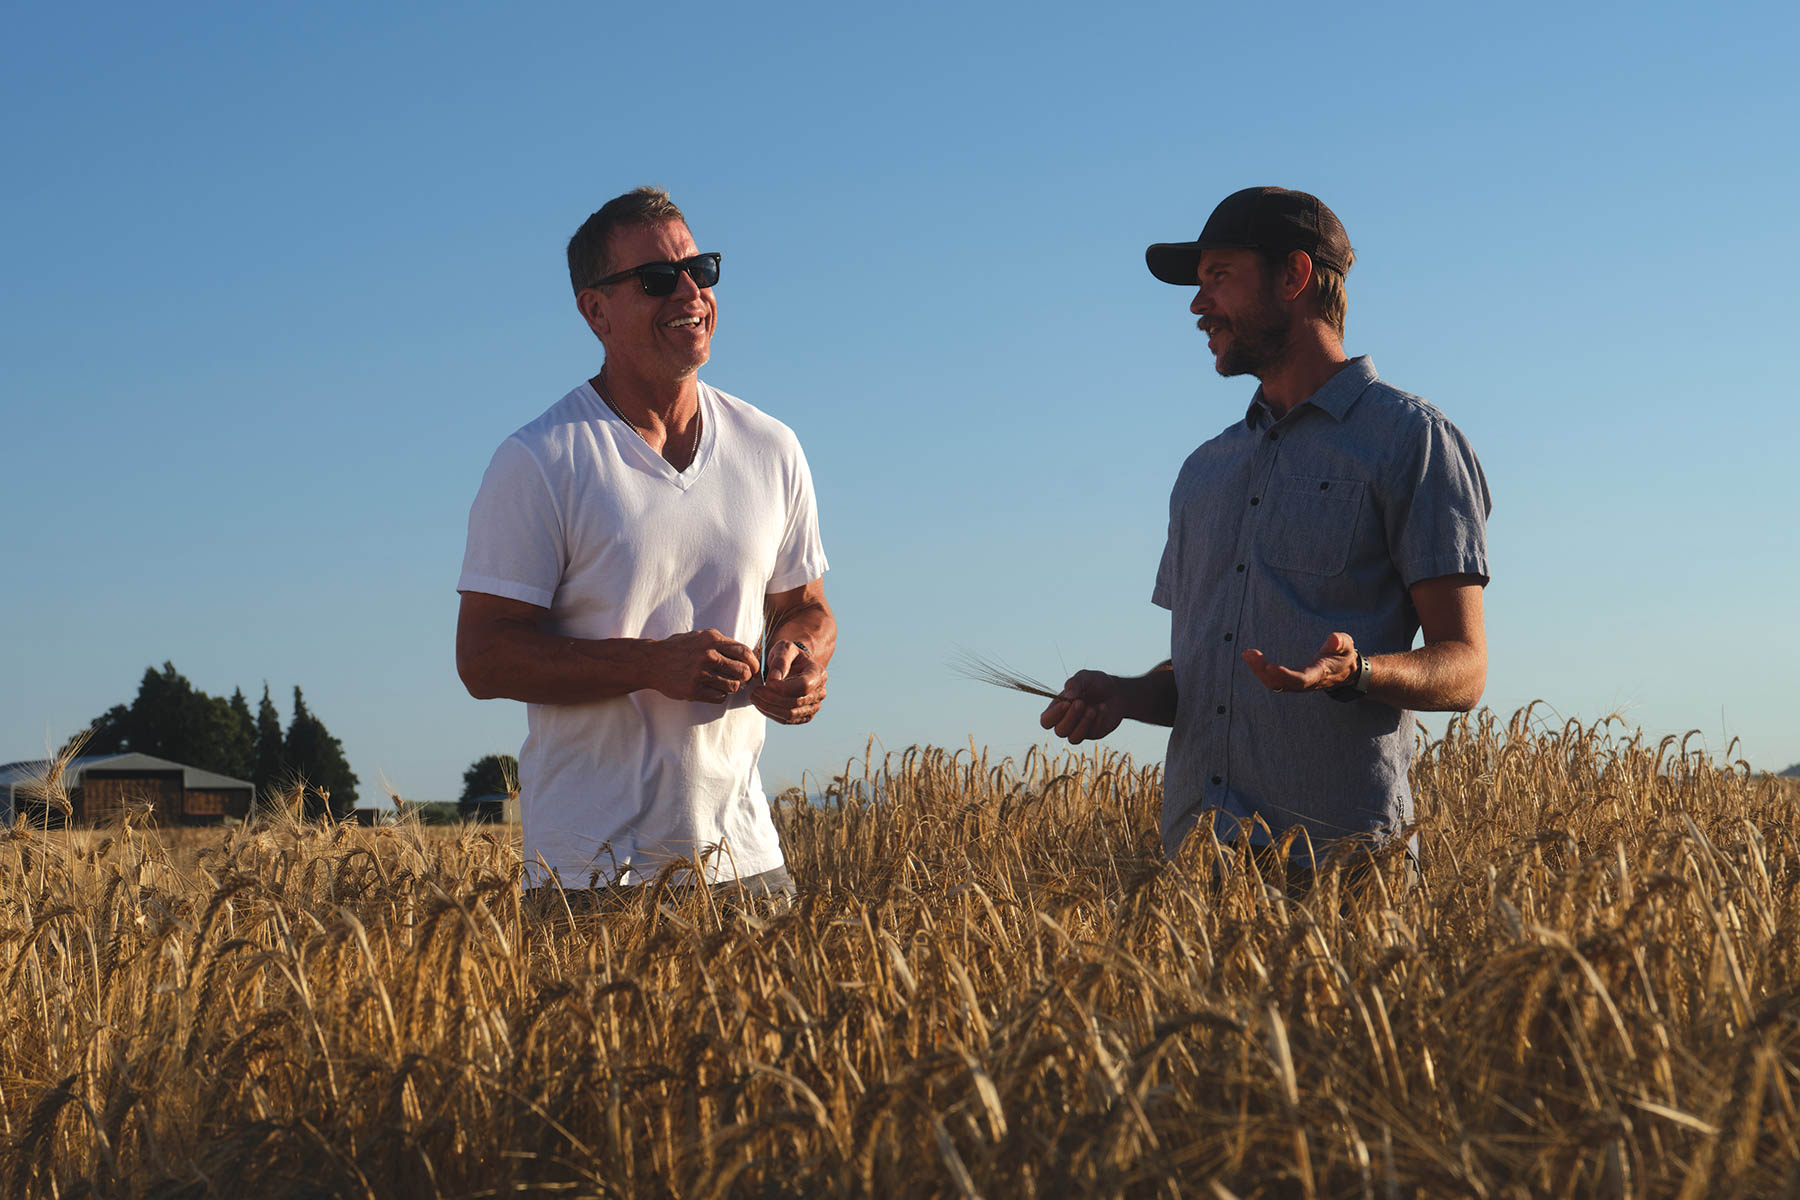 Troy and friend talking in wheat field.